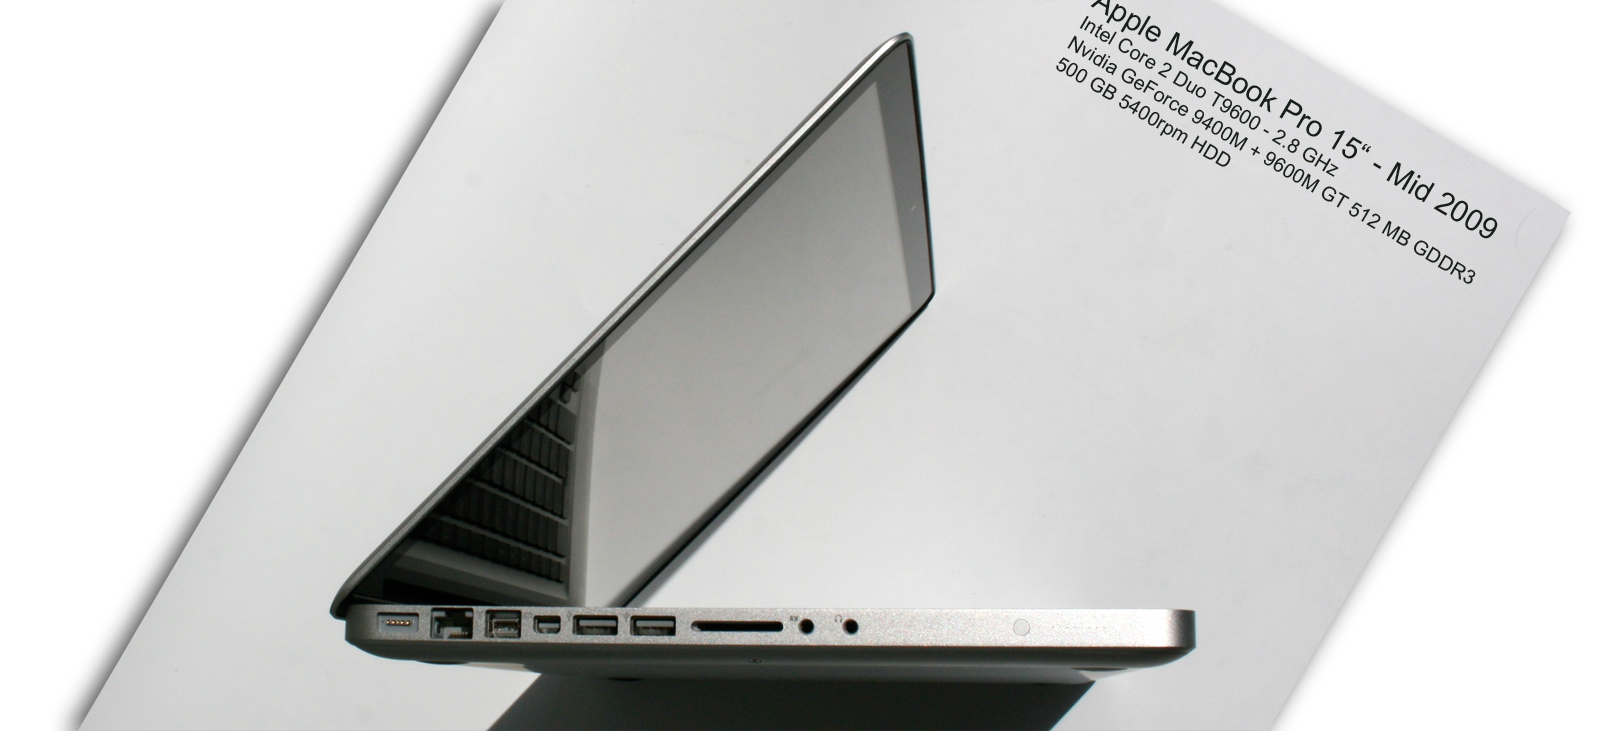 Critique du Apple MacBook Pro 15 Mid 2009 2.8 GHz - Notebookcheck.fr